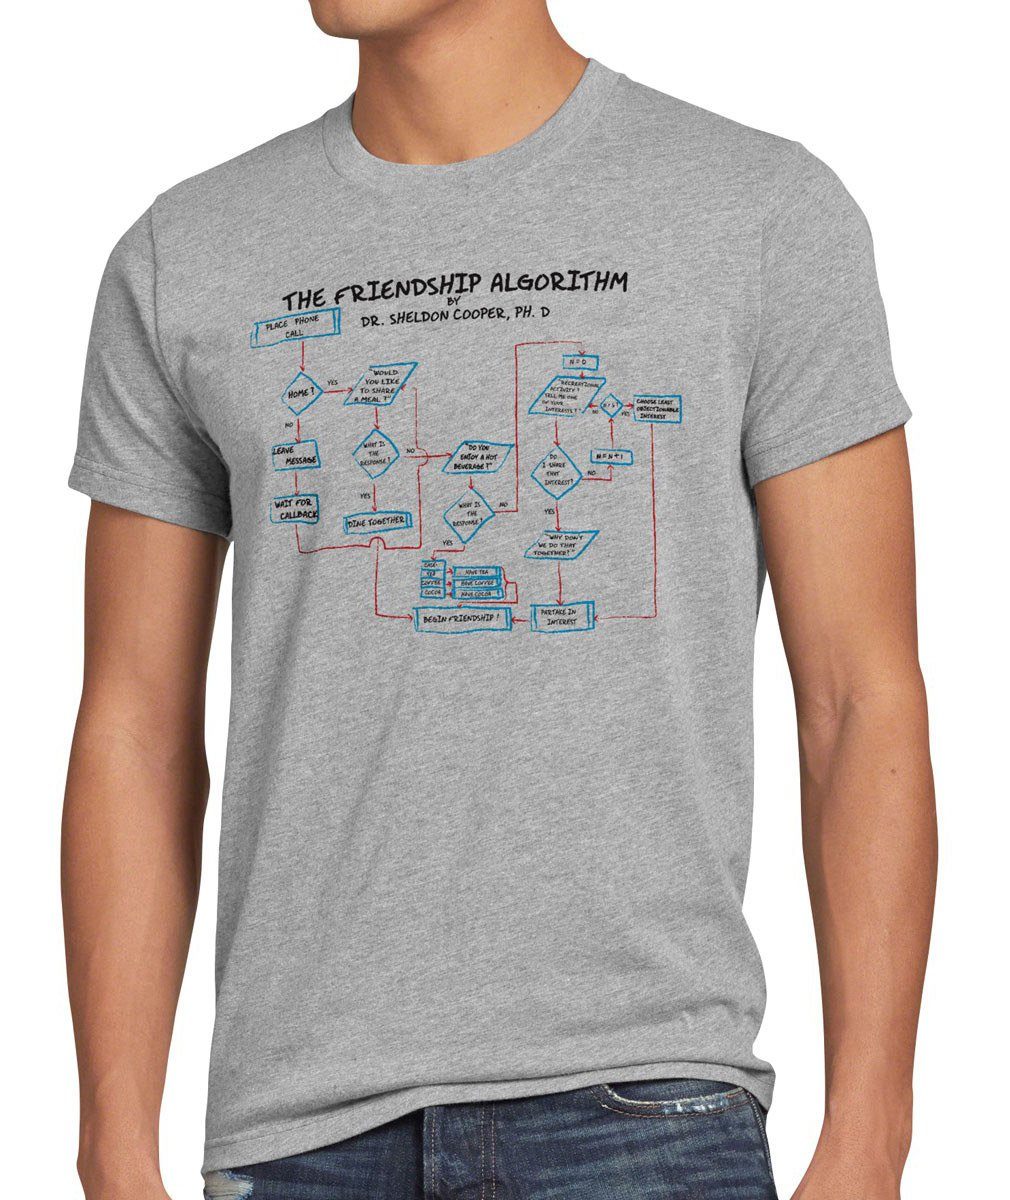 grau Big Bang Herren Cooper Algorithm T-Shirt meliert Friendship Print-Shirt style3 Freundschaft Formel Sheldon Theory